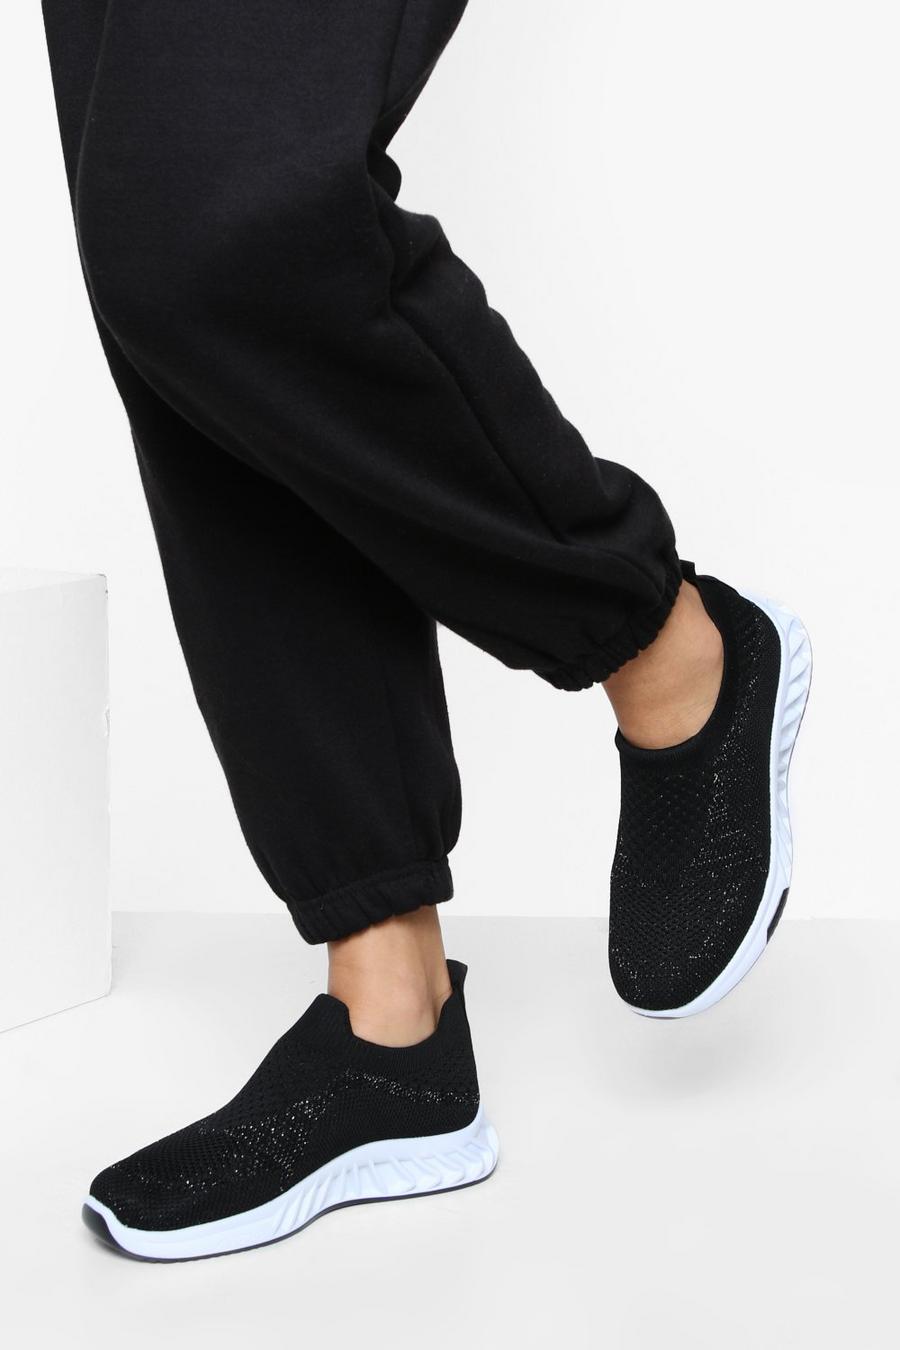 Zapatillas deportivas calcetín de tela, Black negro